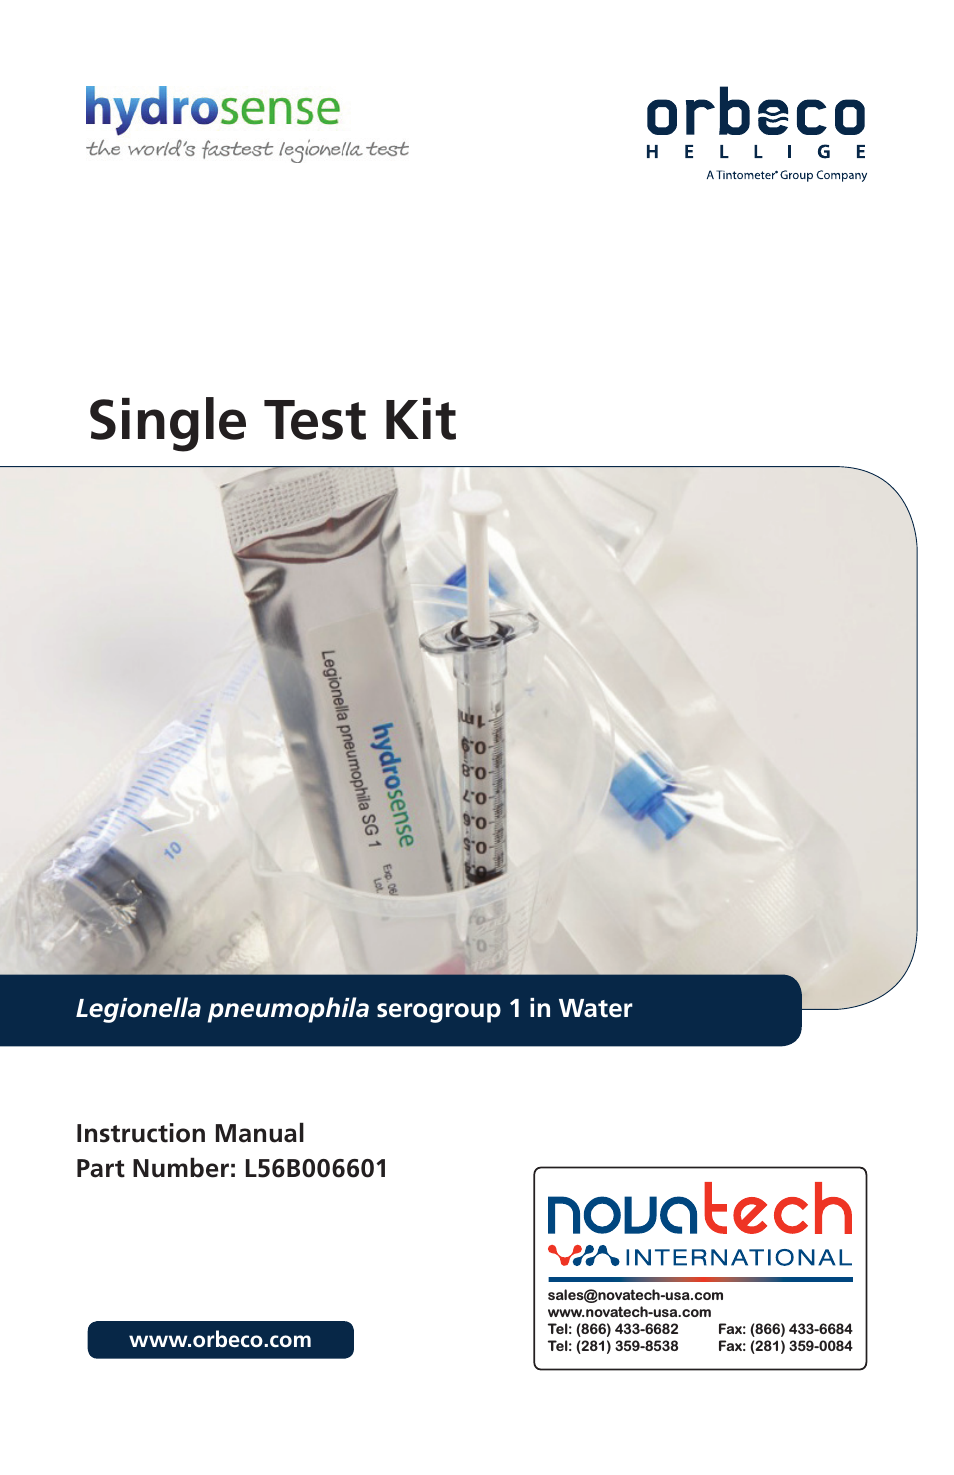 Orbeco-Hellige Legionella Single Test Kit